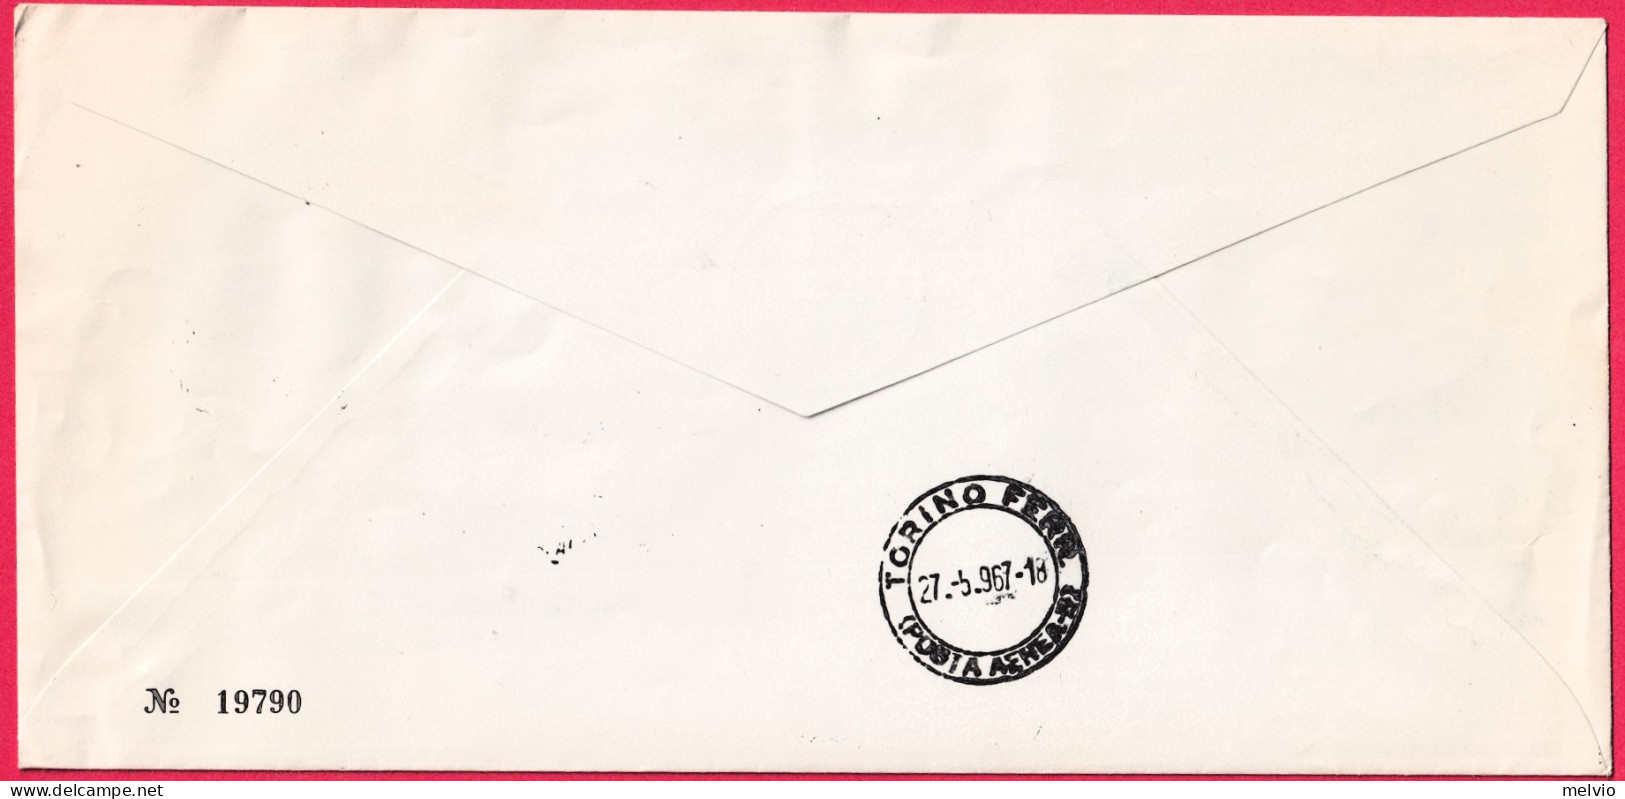 1967-Manifestazione Commemorative Cinquantenario 1^francobollo Di Posta Aerea De - Manifestations